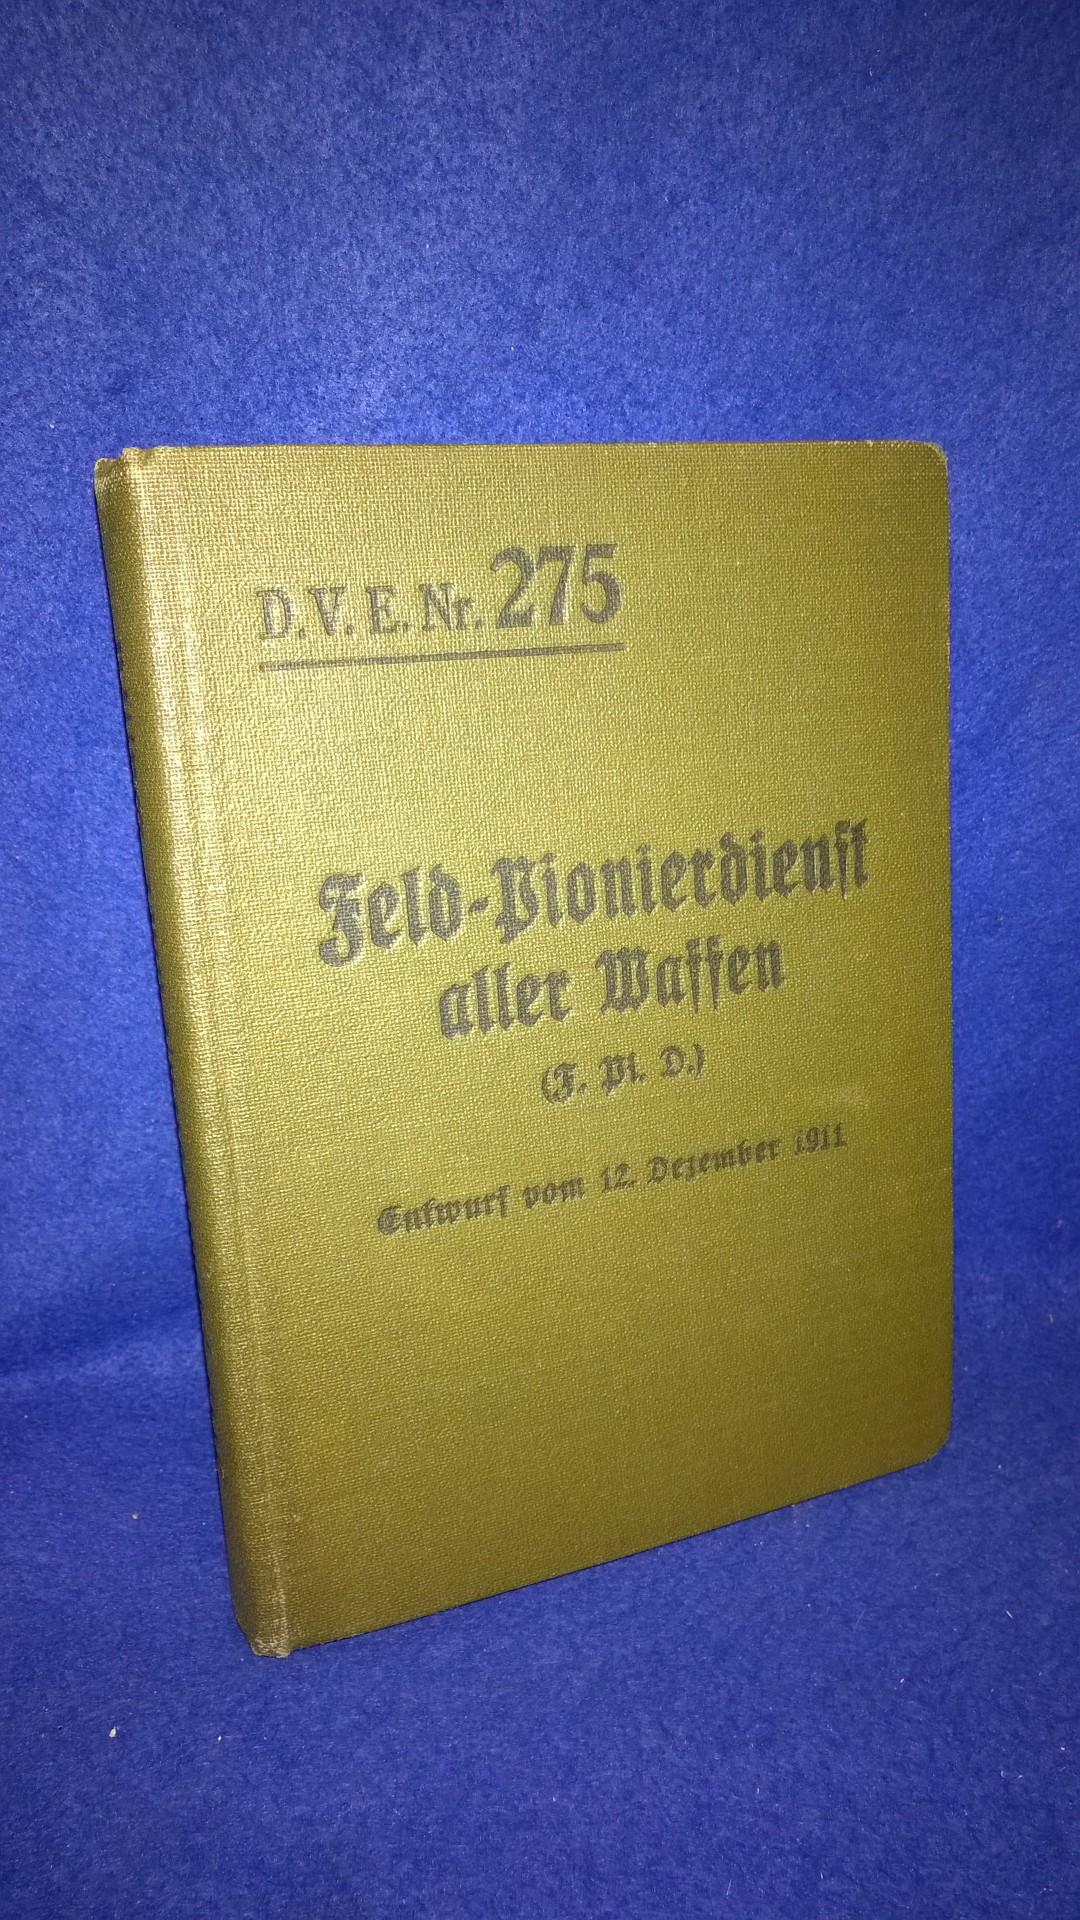 Feld-Pionierdienst aller Waffen (F.Pi.D.). Entwurf vom 12. Dezember 1912.